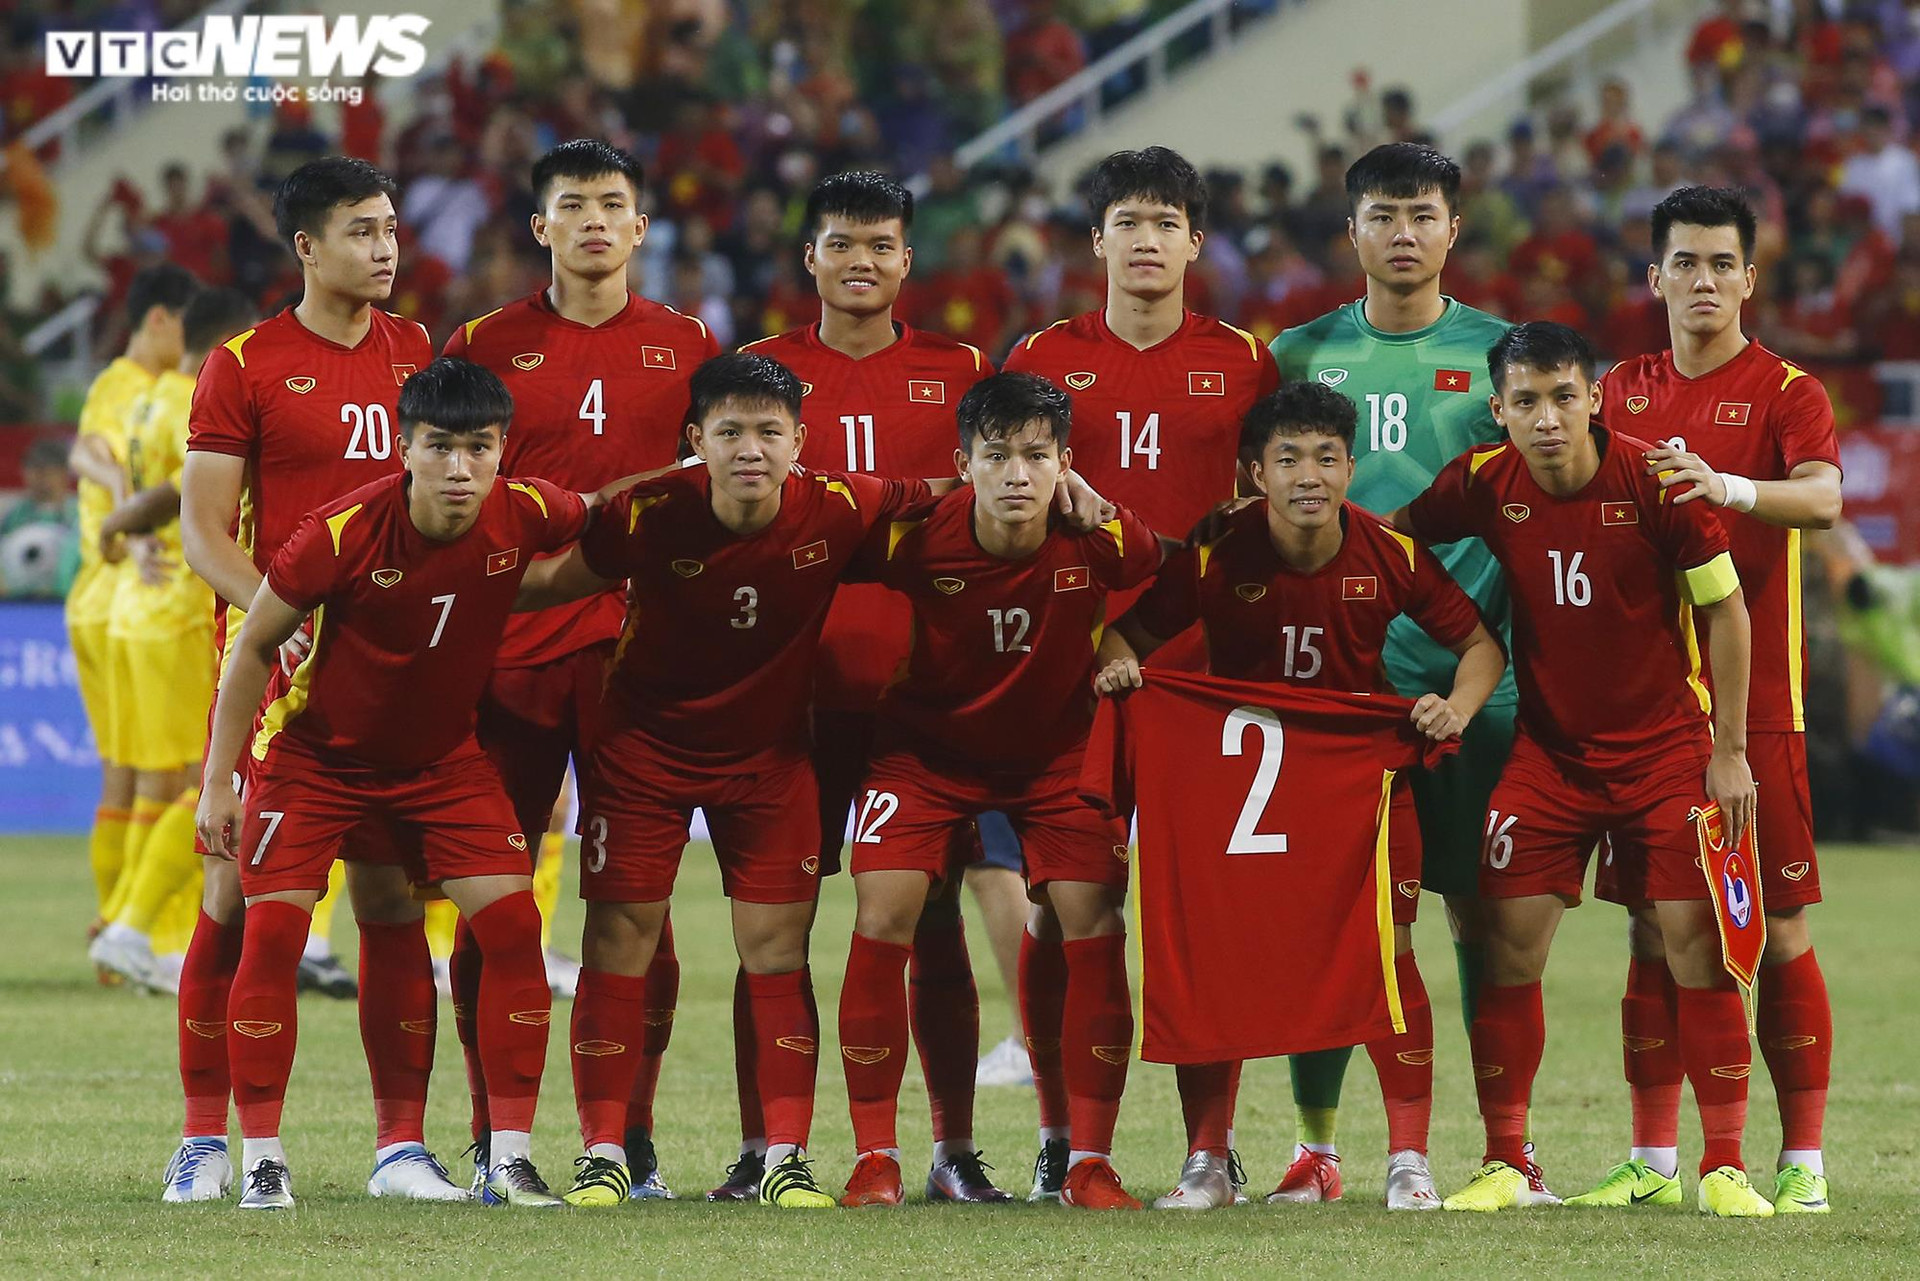 Lê Văn Xuân vứt nạng ôm đồng đội mừng U23 Việt Nam vô địch - 1